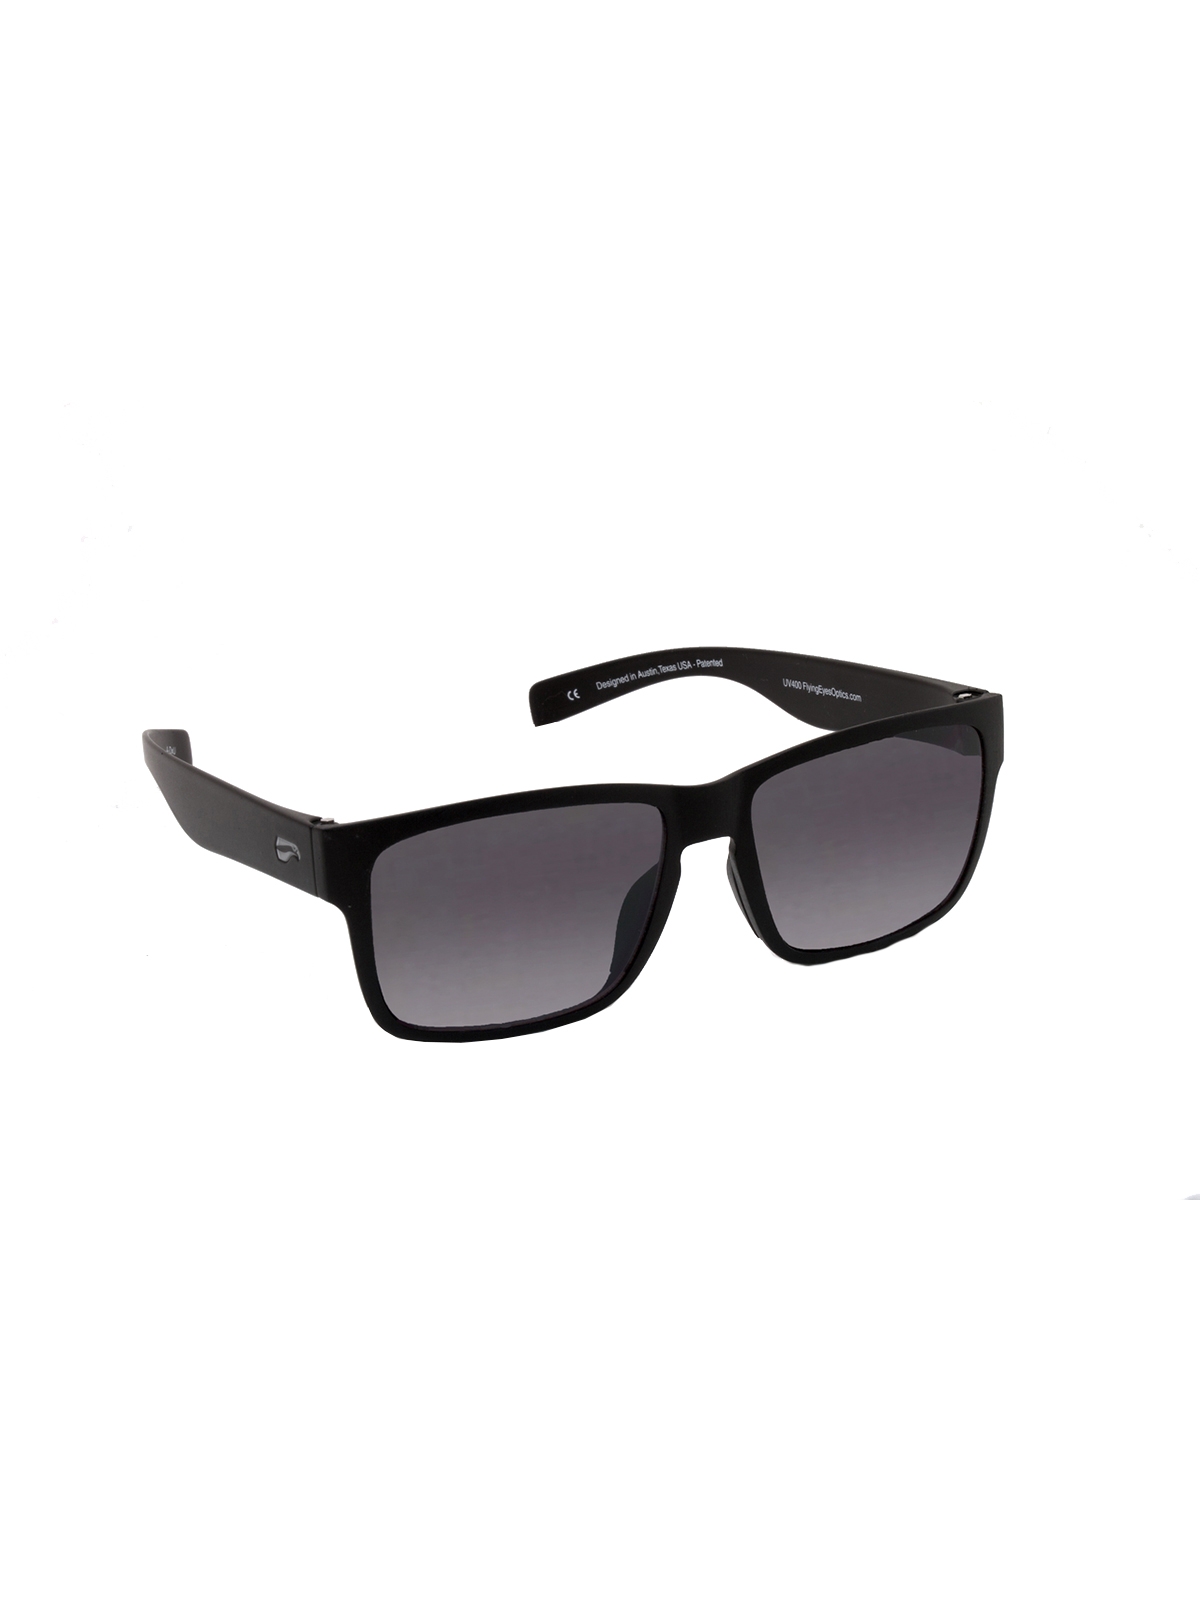 Flying Eyes Sonnenbrille Osprey - Rahmen matt schwarz, Linsen grau (Verlauf)